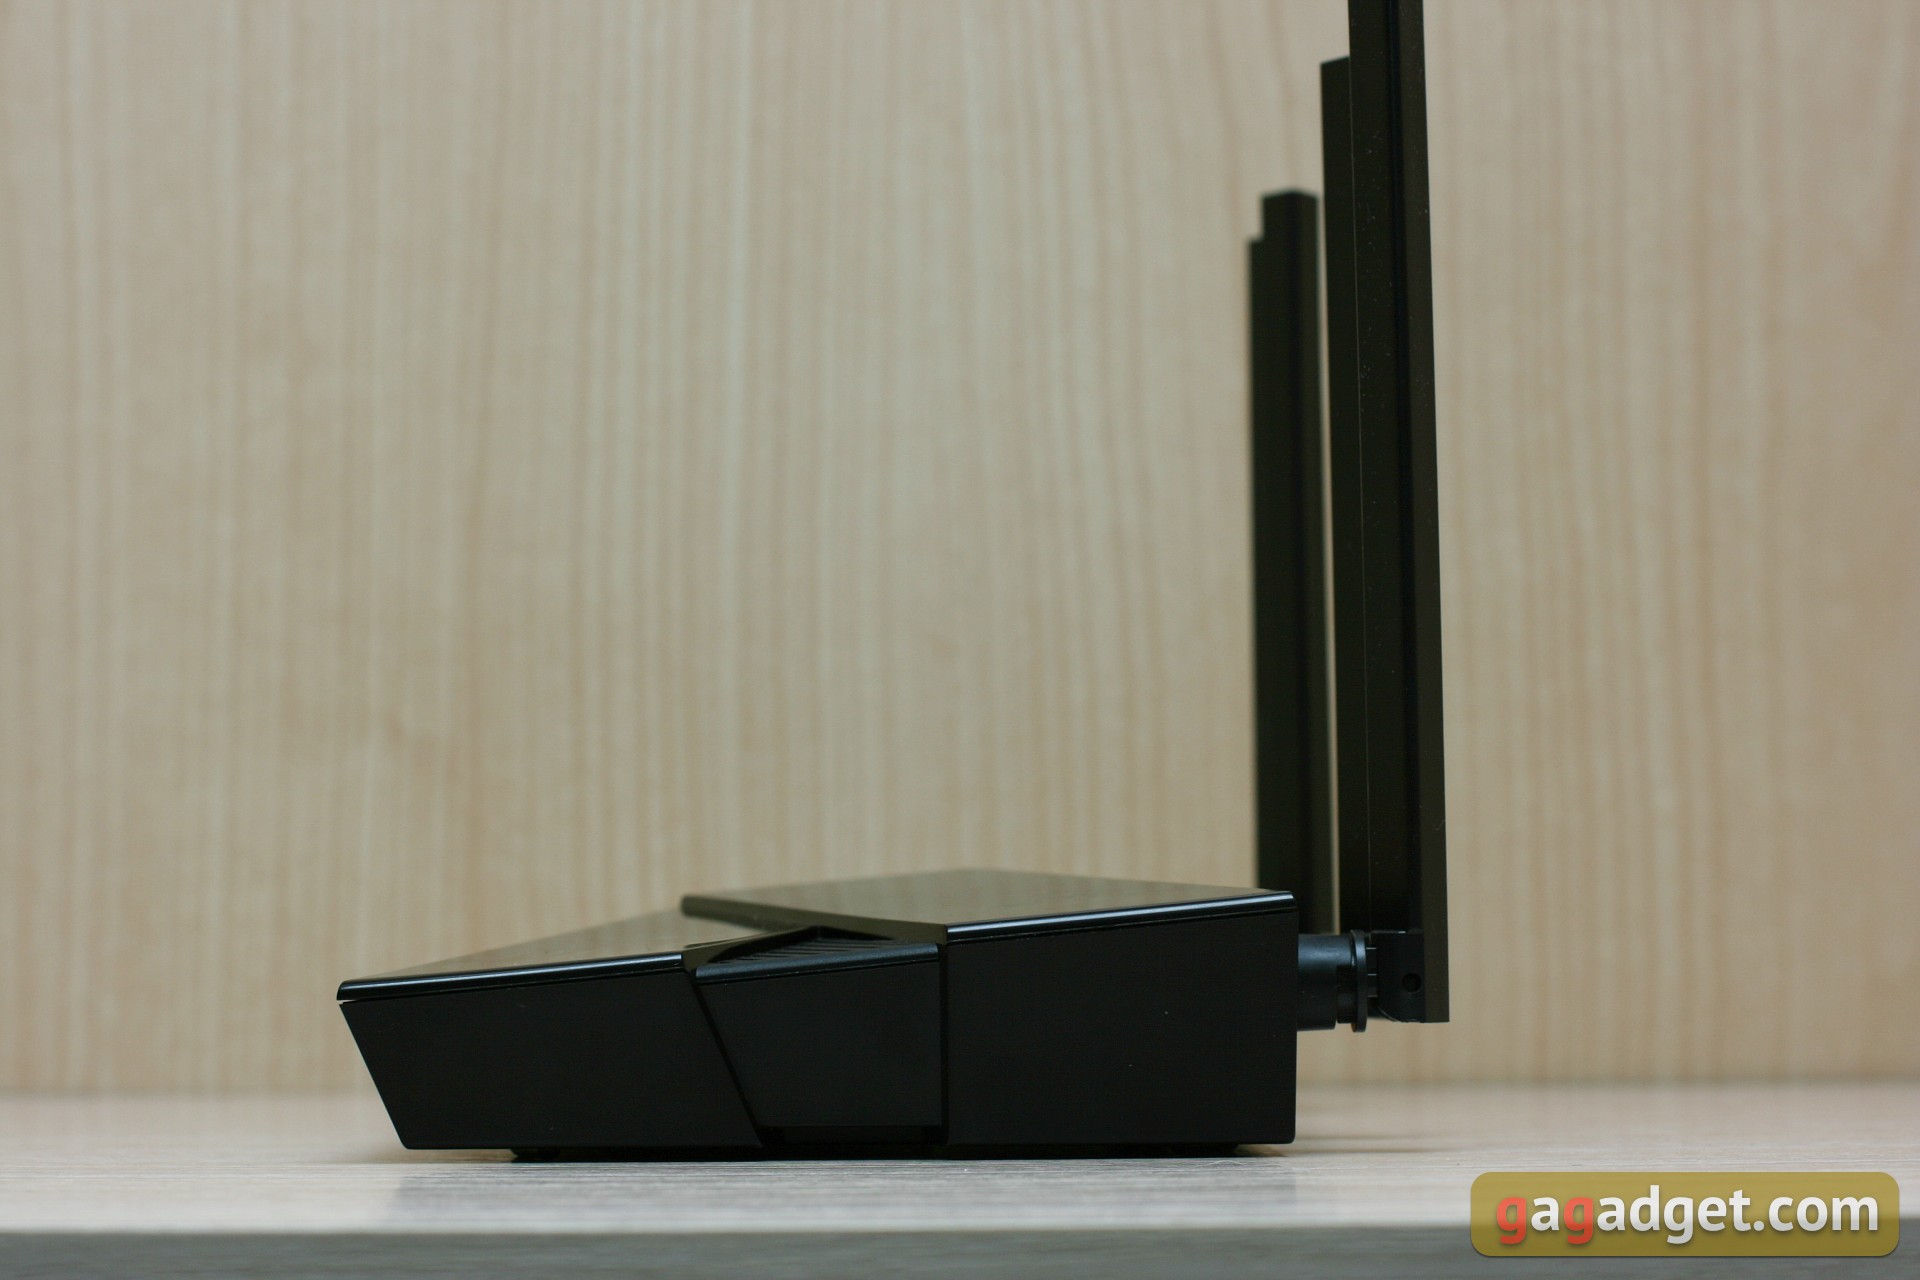 Бесшовная домашняя сеть Wi-Fi 6: обзор роутера TP-Link Archer AX23-15